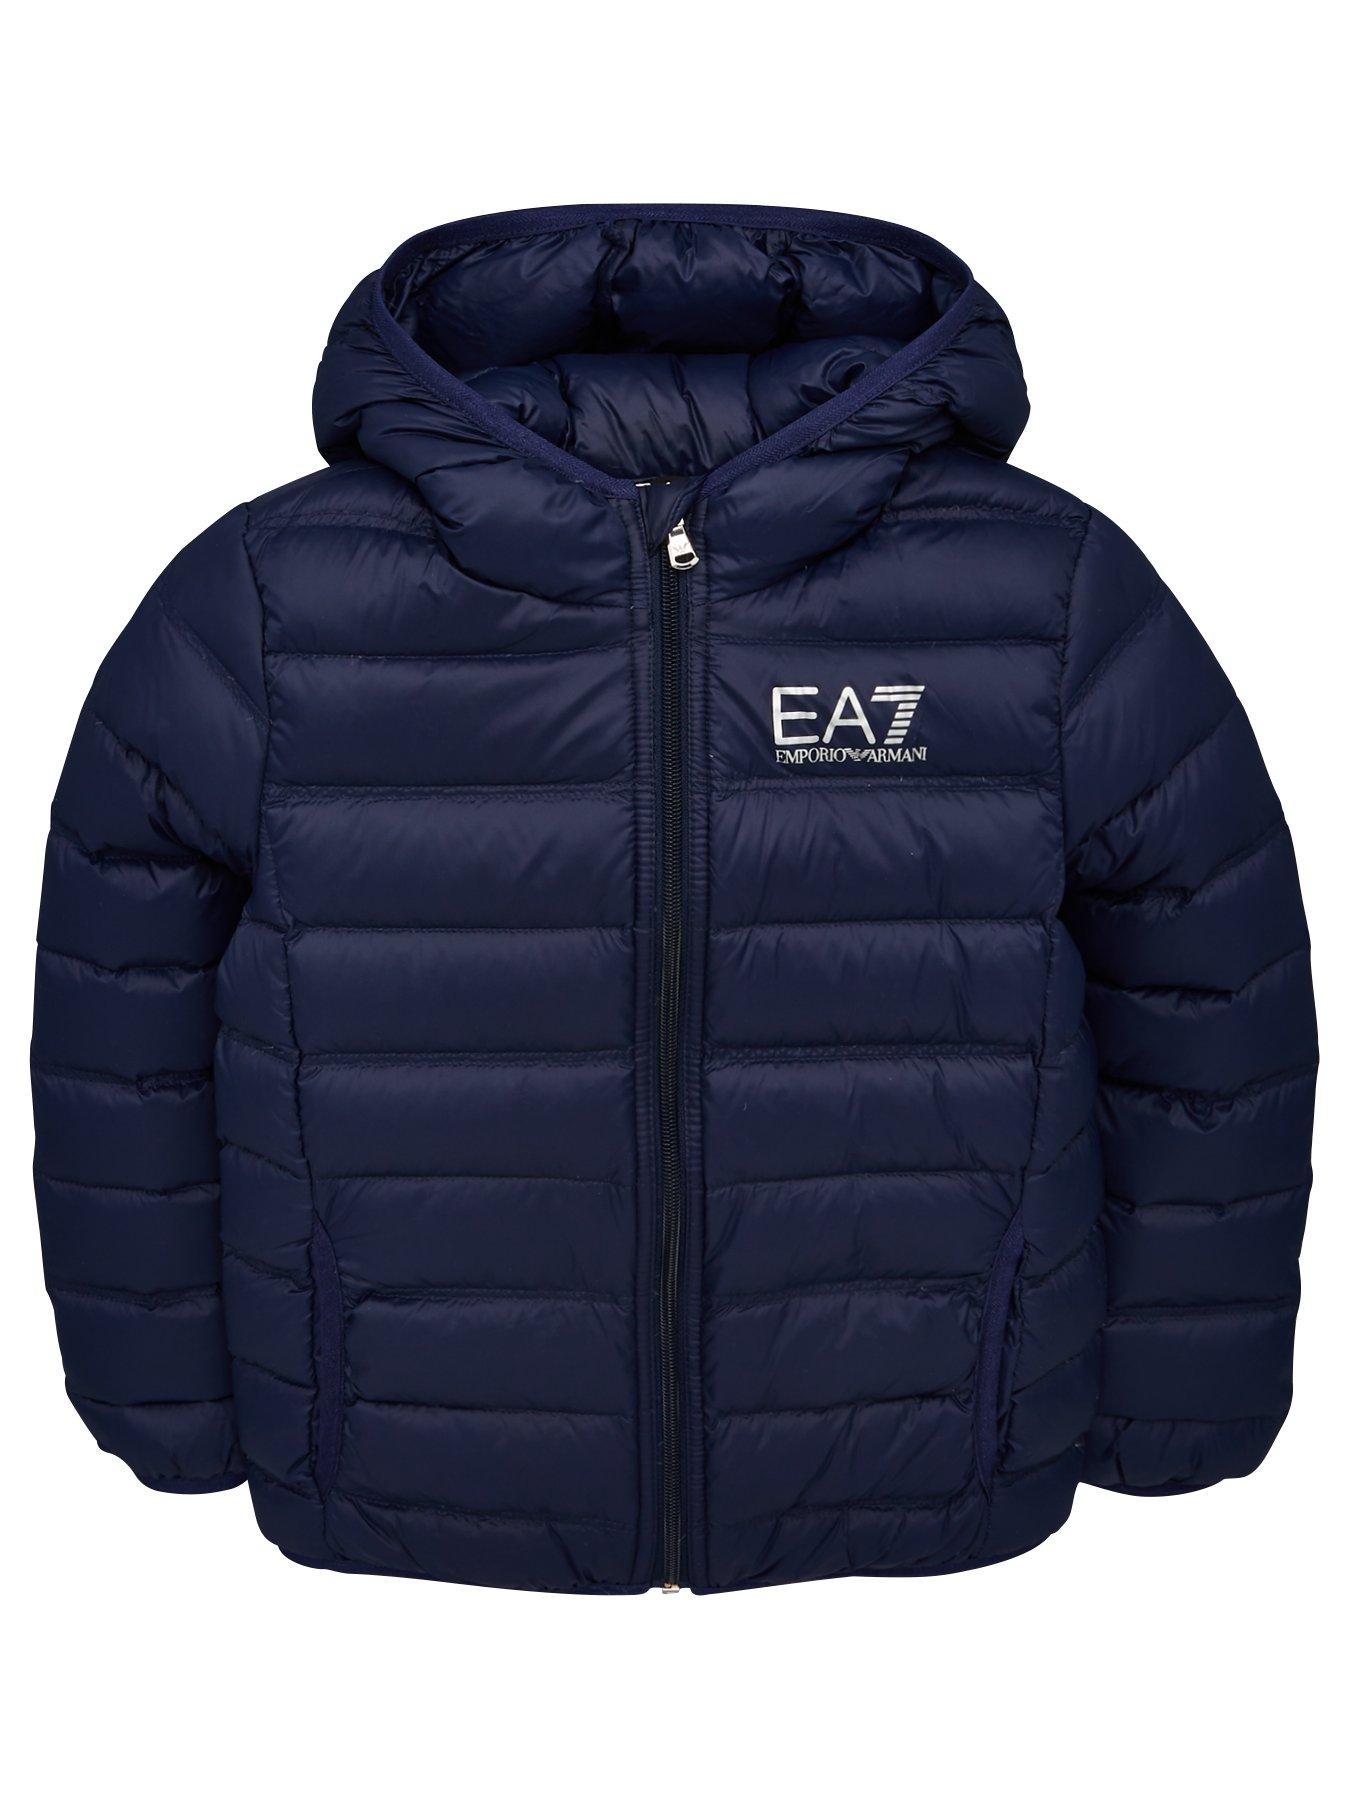 ea7 emporio armani jacket